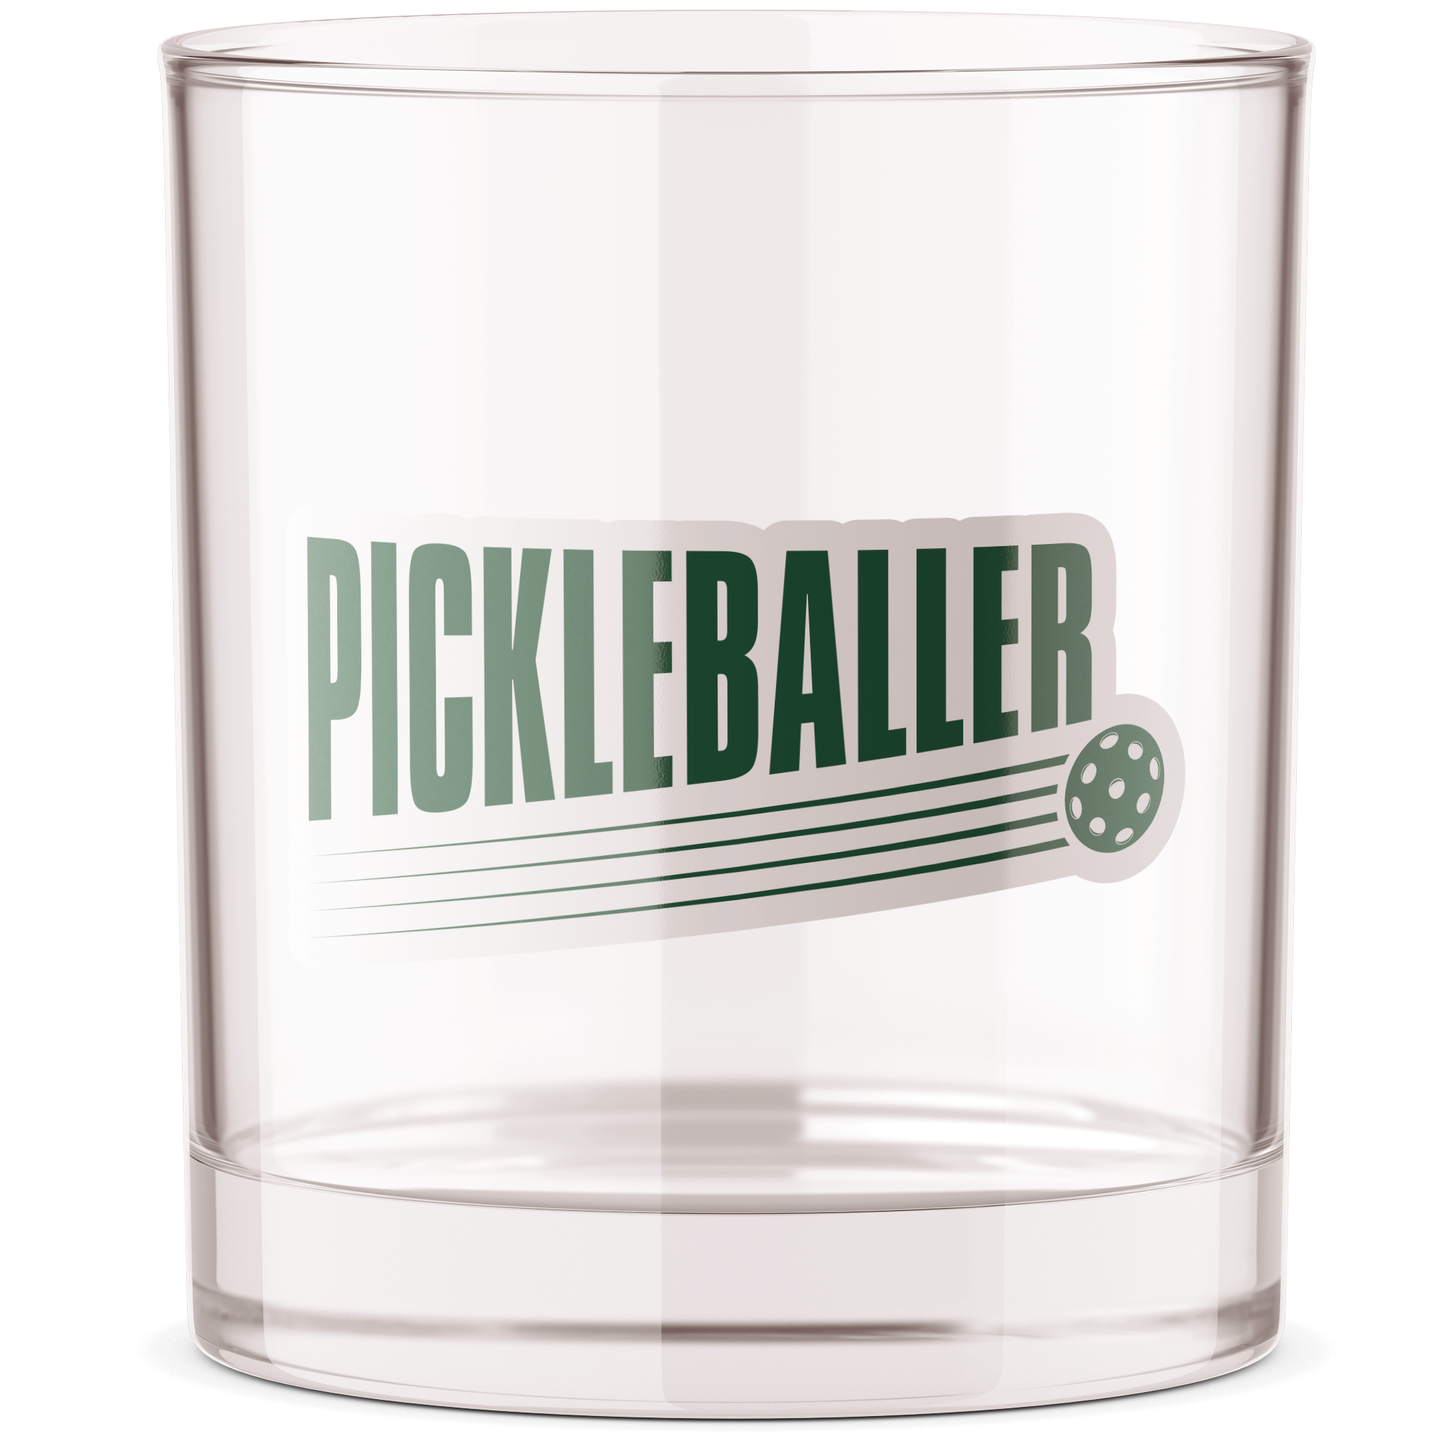 Pickleballer Pickleball Bourbon Whiskey Rocks Glass